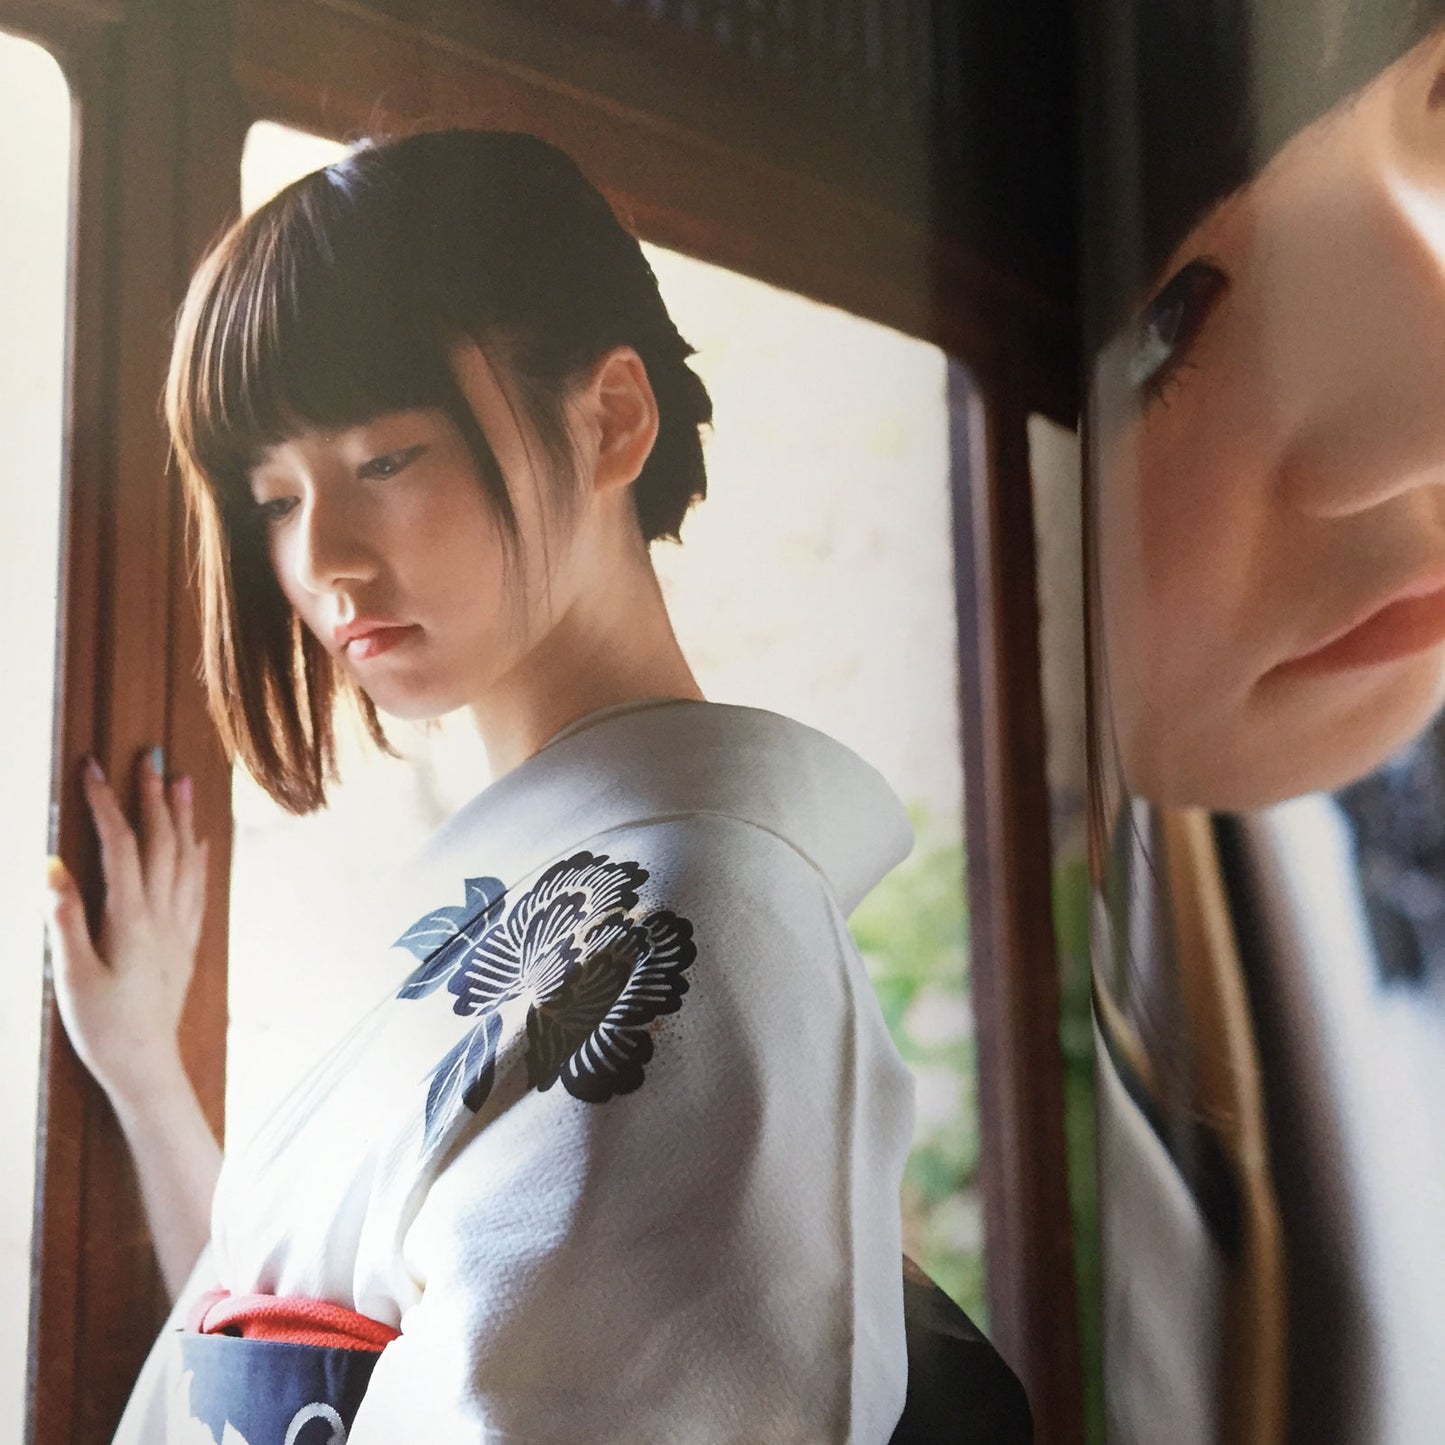 Haruka Shimazaki Photo Book "Paruru komaru" / AKB48